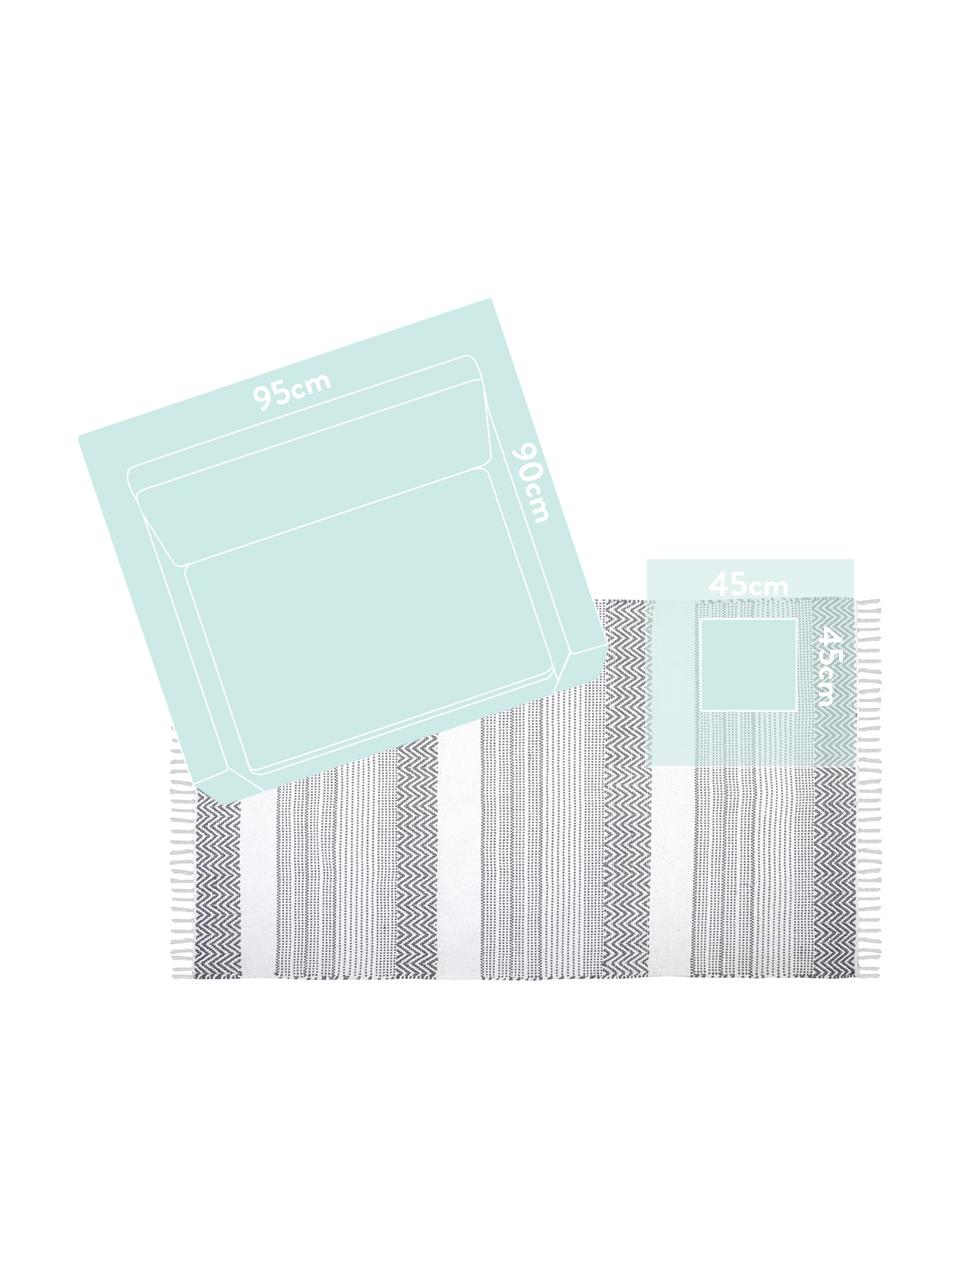 Baumwollteppich Iceland mit grafischem Streifendesign, 100% Baumwolle, Grau, Weiss, B 90 x L 150 cm (Grösse XS)